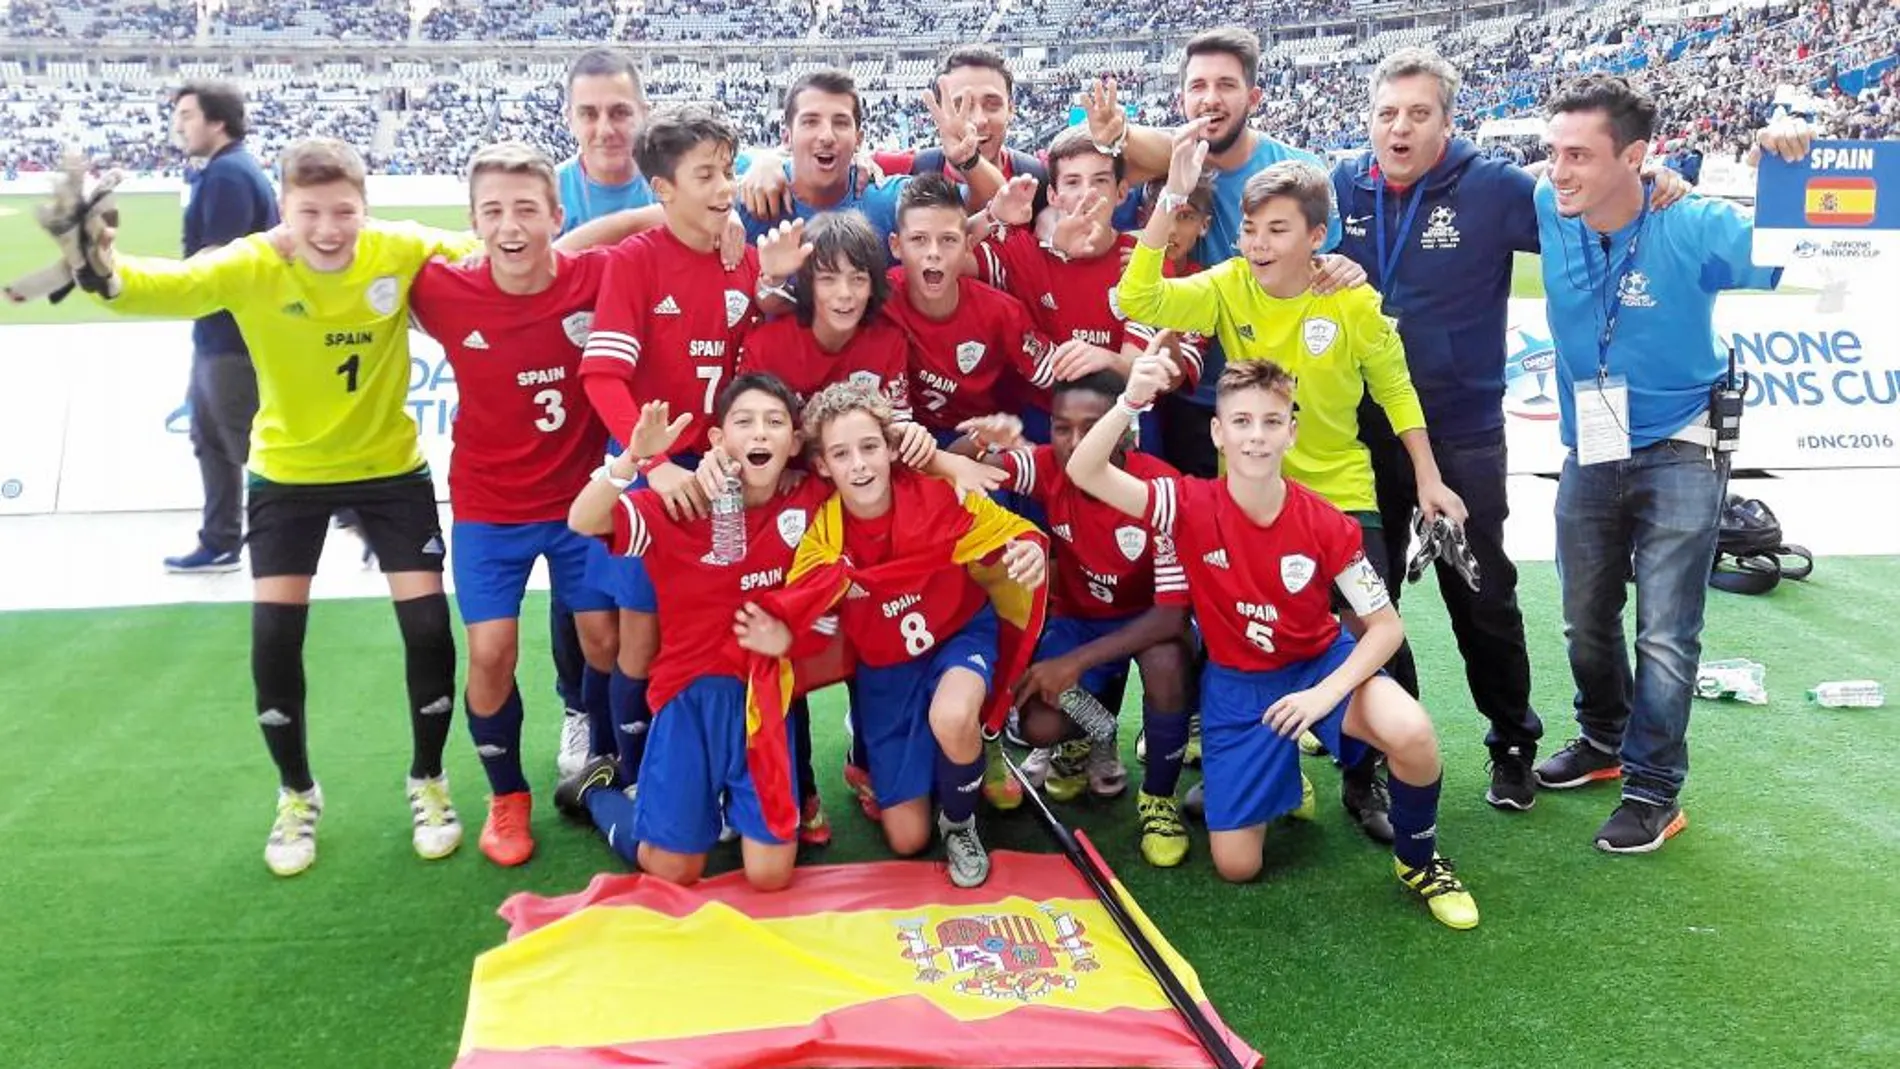 El Sevilla representó a España en la Danone Nations Cup y terminó tercero